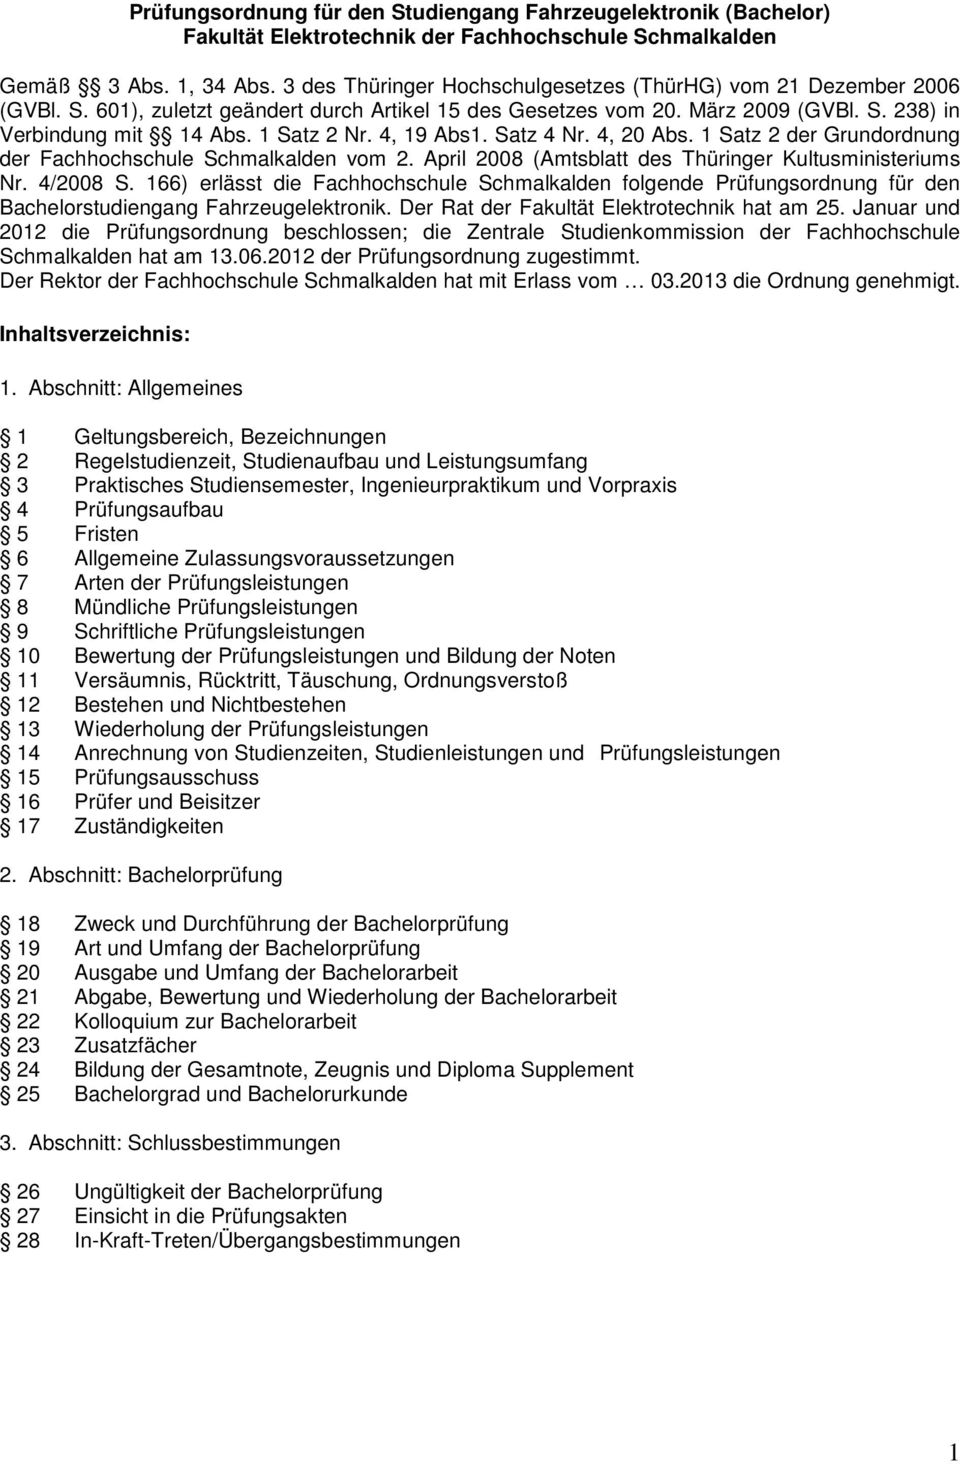 4, 19 Abs1. Satz 4 Nr. 4, 20 Abs. 1 Satz 2 der Grundordnung der Fachhochschule Schmalkalden vom 2. April 2008 (Amtsblatt des Thüringer Kultusministeriums Nr. 4/2008 S.